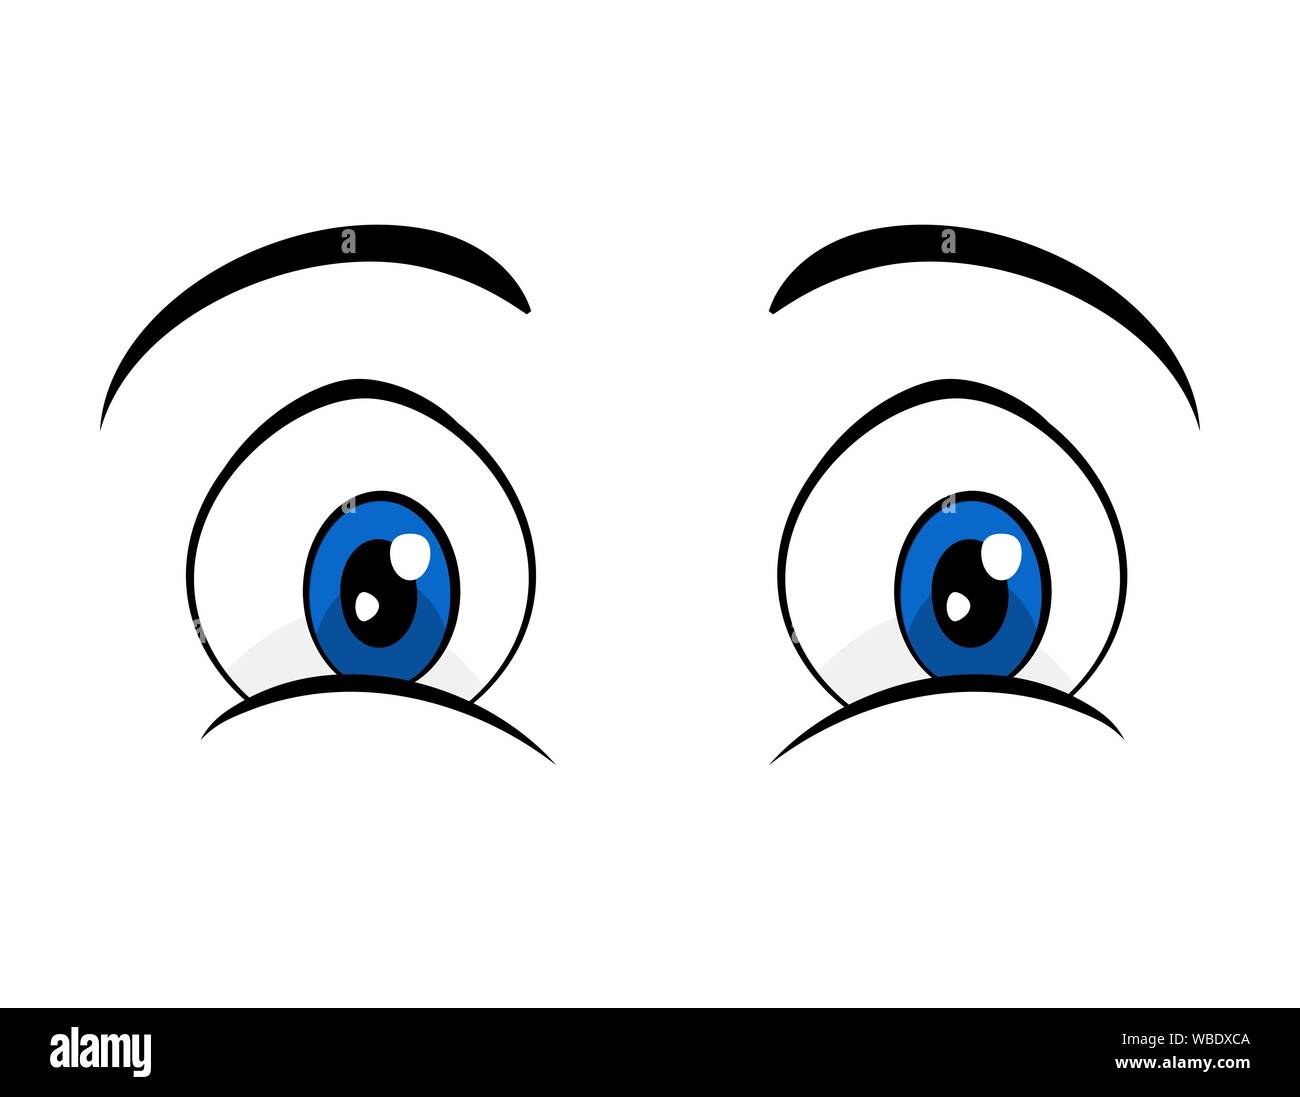 Les yeux bleu design dessin animé bande dessinée isolé sur fond blanc Illustration de Vecteur